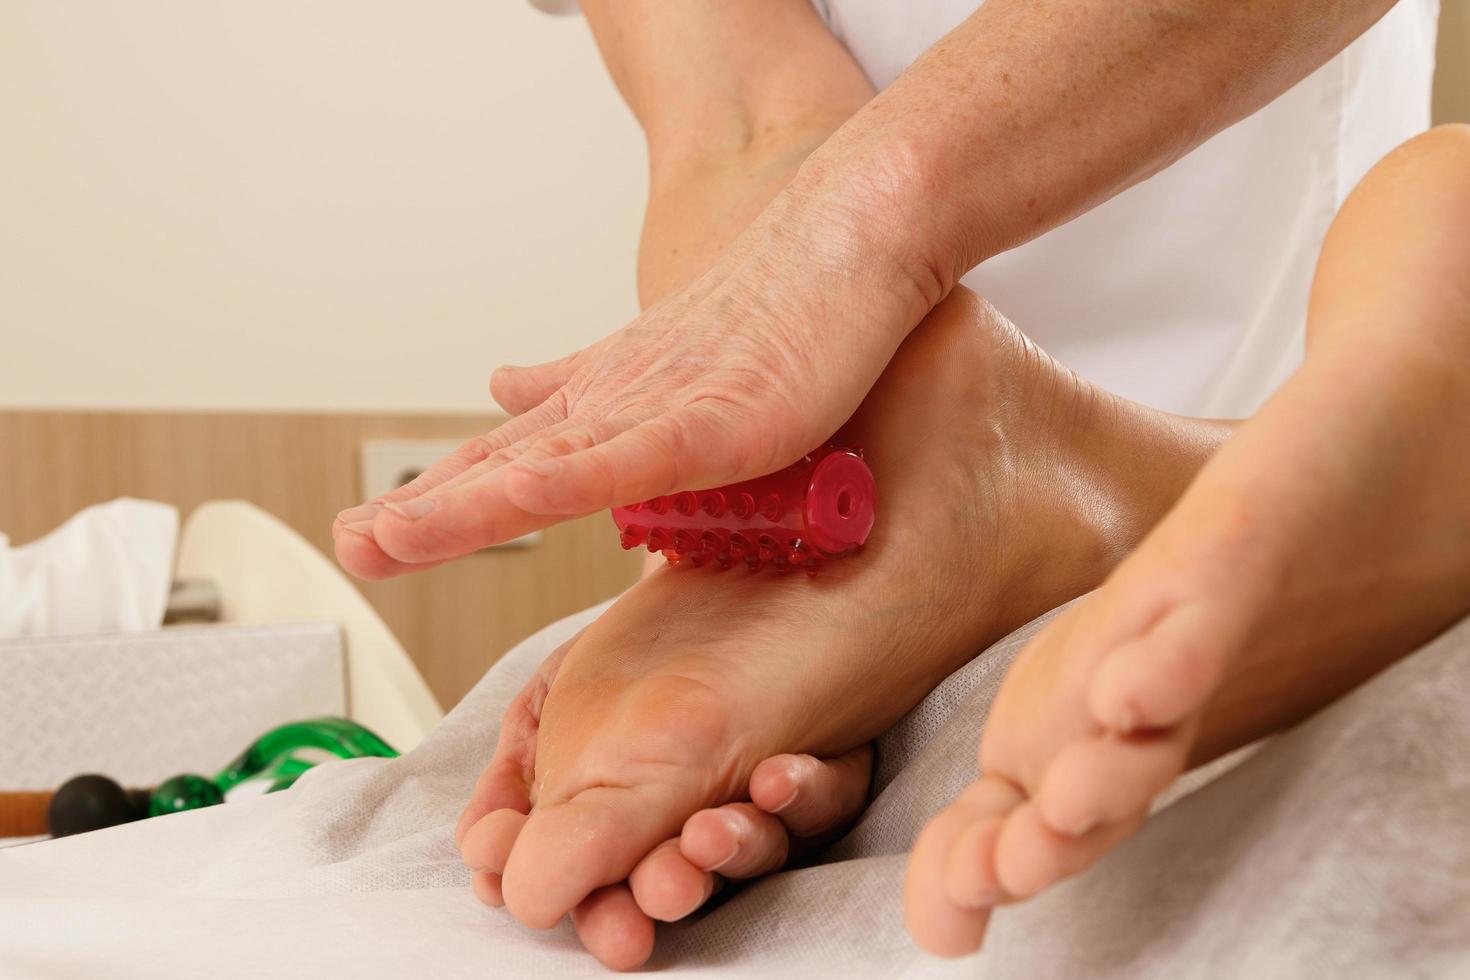 massoterapia profissional - massagem nos pés com ferramentas especiais foto